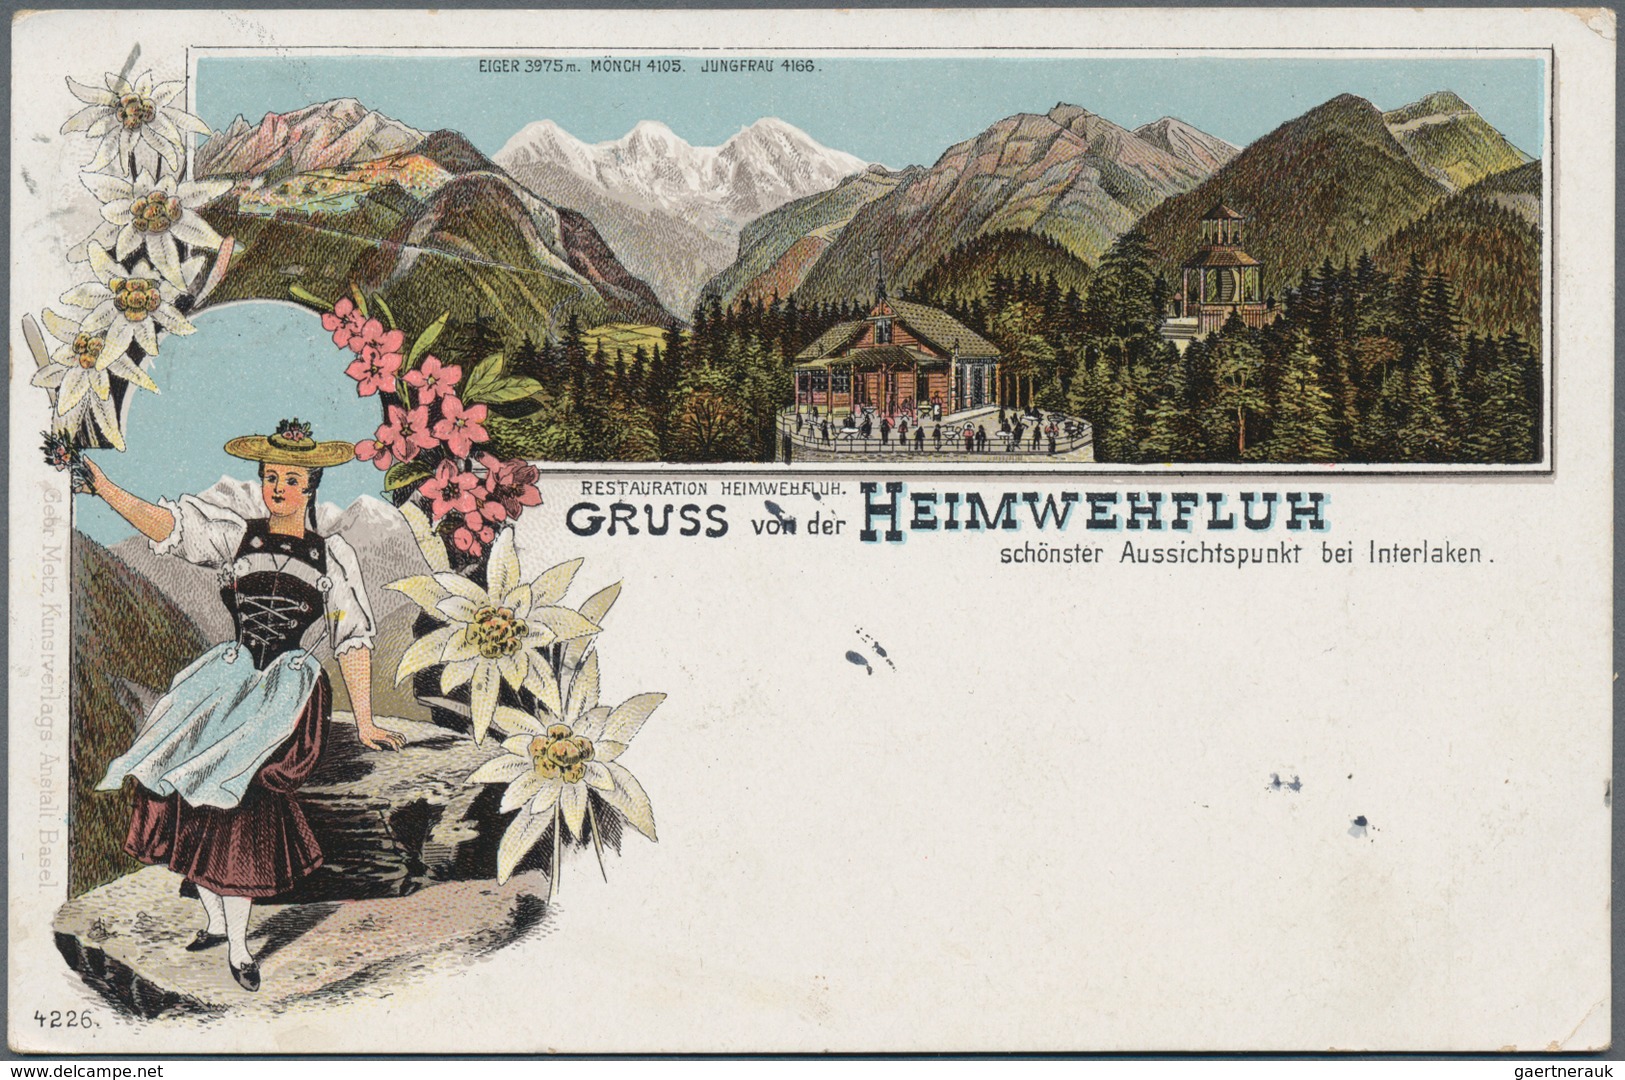 Ansichtskarten: 1900/1945 (ca.), rd. 300 Karten, überwiegend Topographie Deutschland (wenige Karten